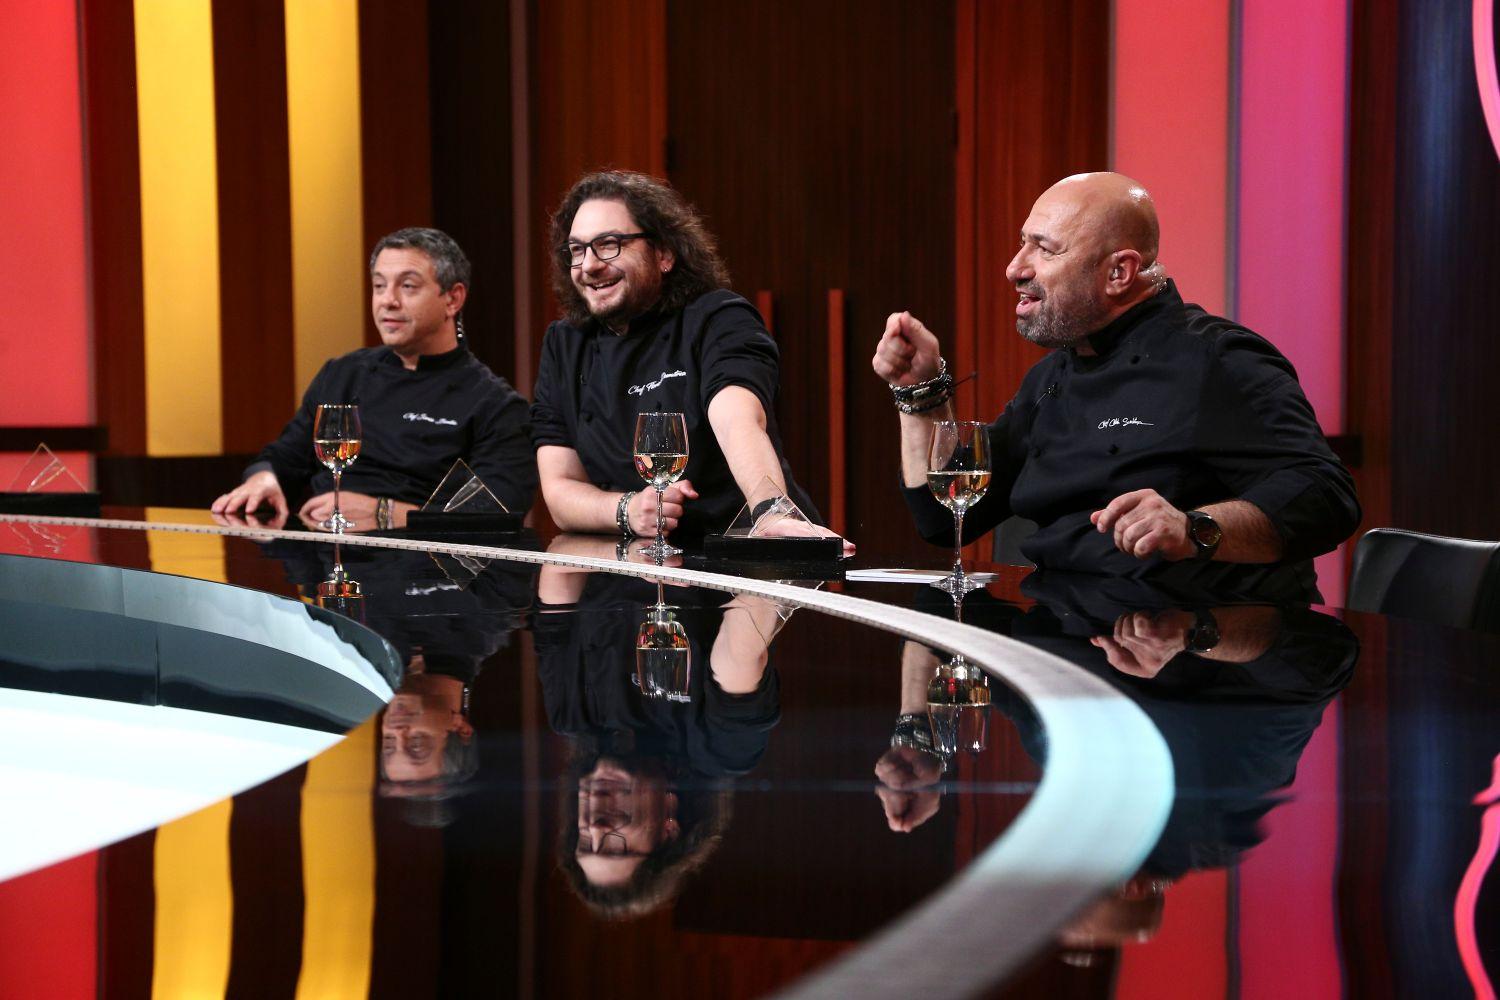 Chefii Florin Dumitrescu, Sorin Bontea și Cătălin Scărlătescu, în platoul emisiunii Chefi la cuțite